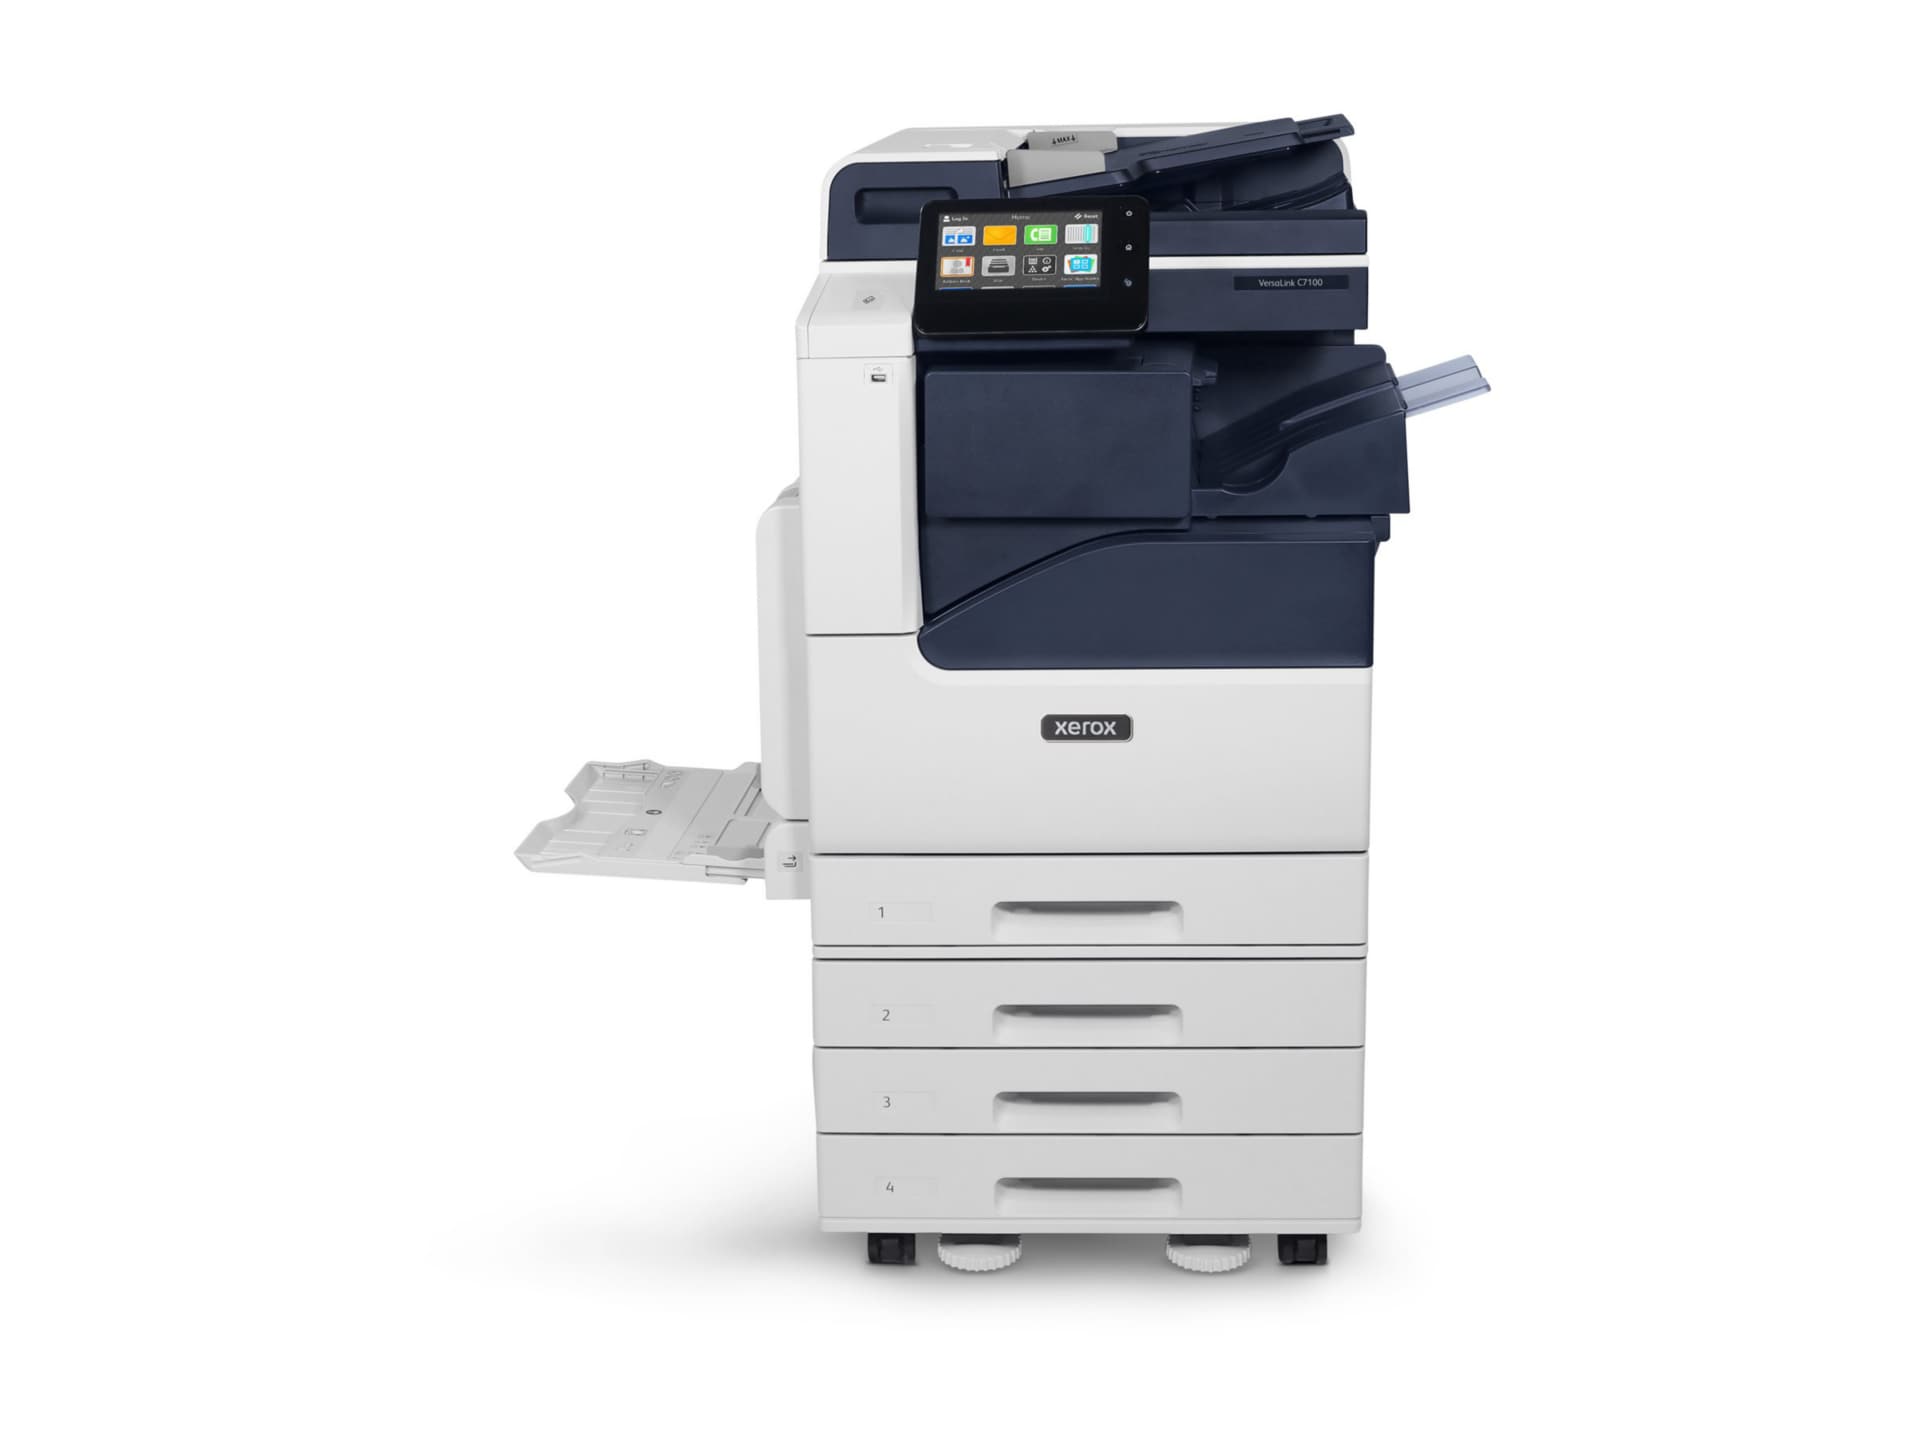 Xerox VersaLink C7120/ENGT2 - multifunction printer - color